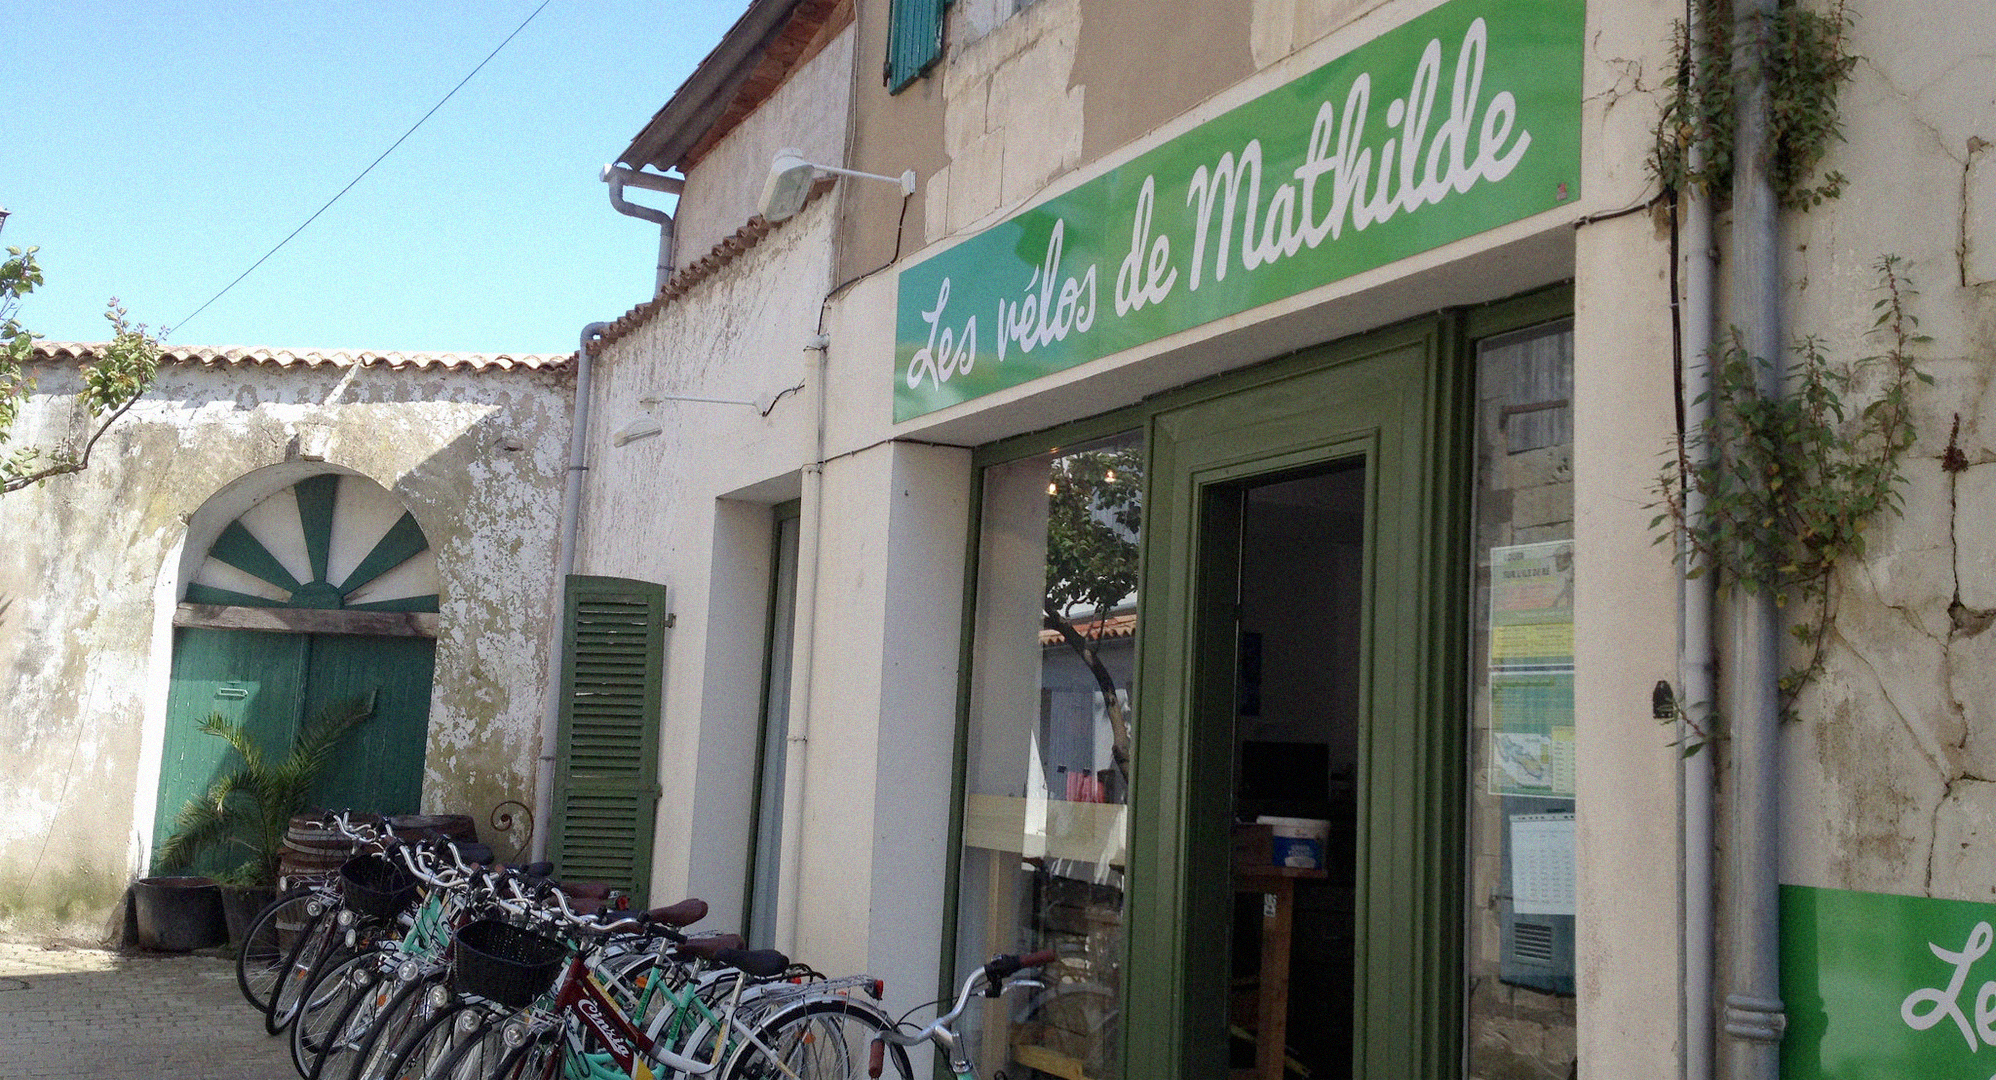 Venez louer votre vélo sur l'Ile-de-Ré avec la boutique des Vélos de Mathilde